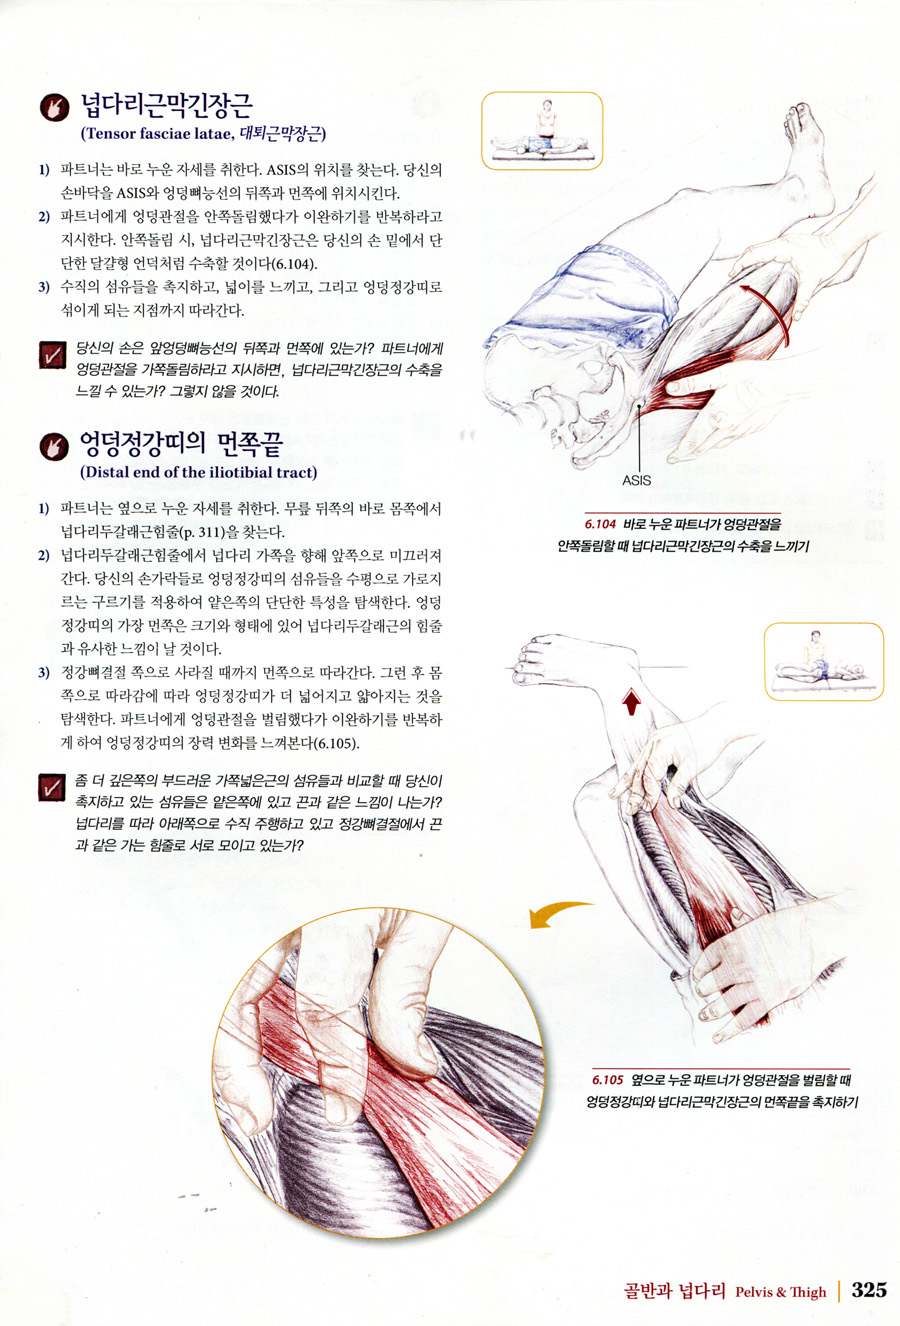 근육뼈대계통 Palpation Road Map (5판 )-손으로 근육, 뼈, 기타 조직의 위치를 찾기 위한 안내서